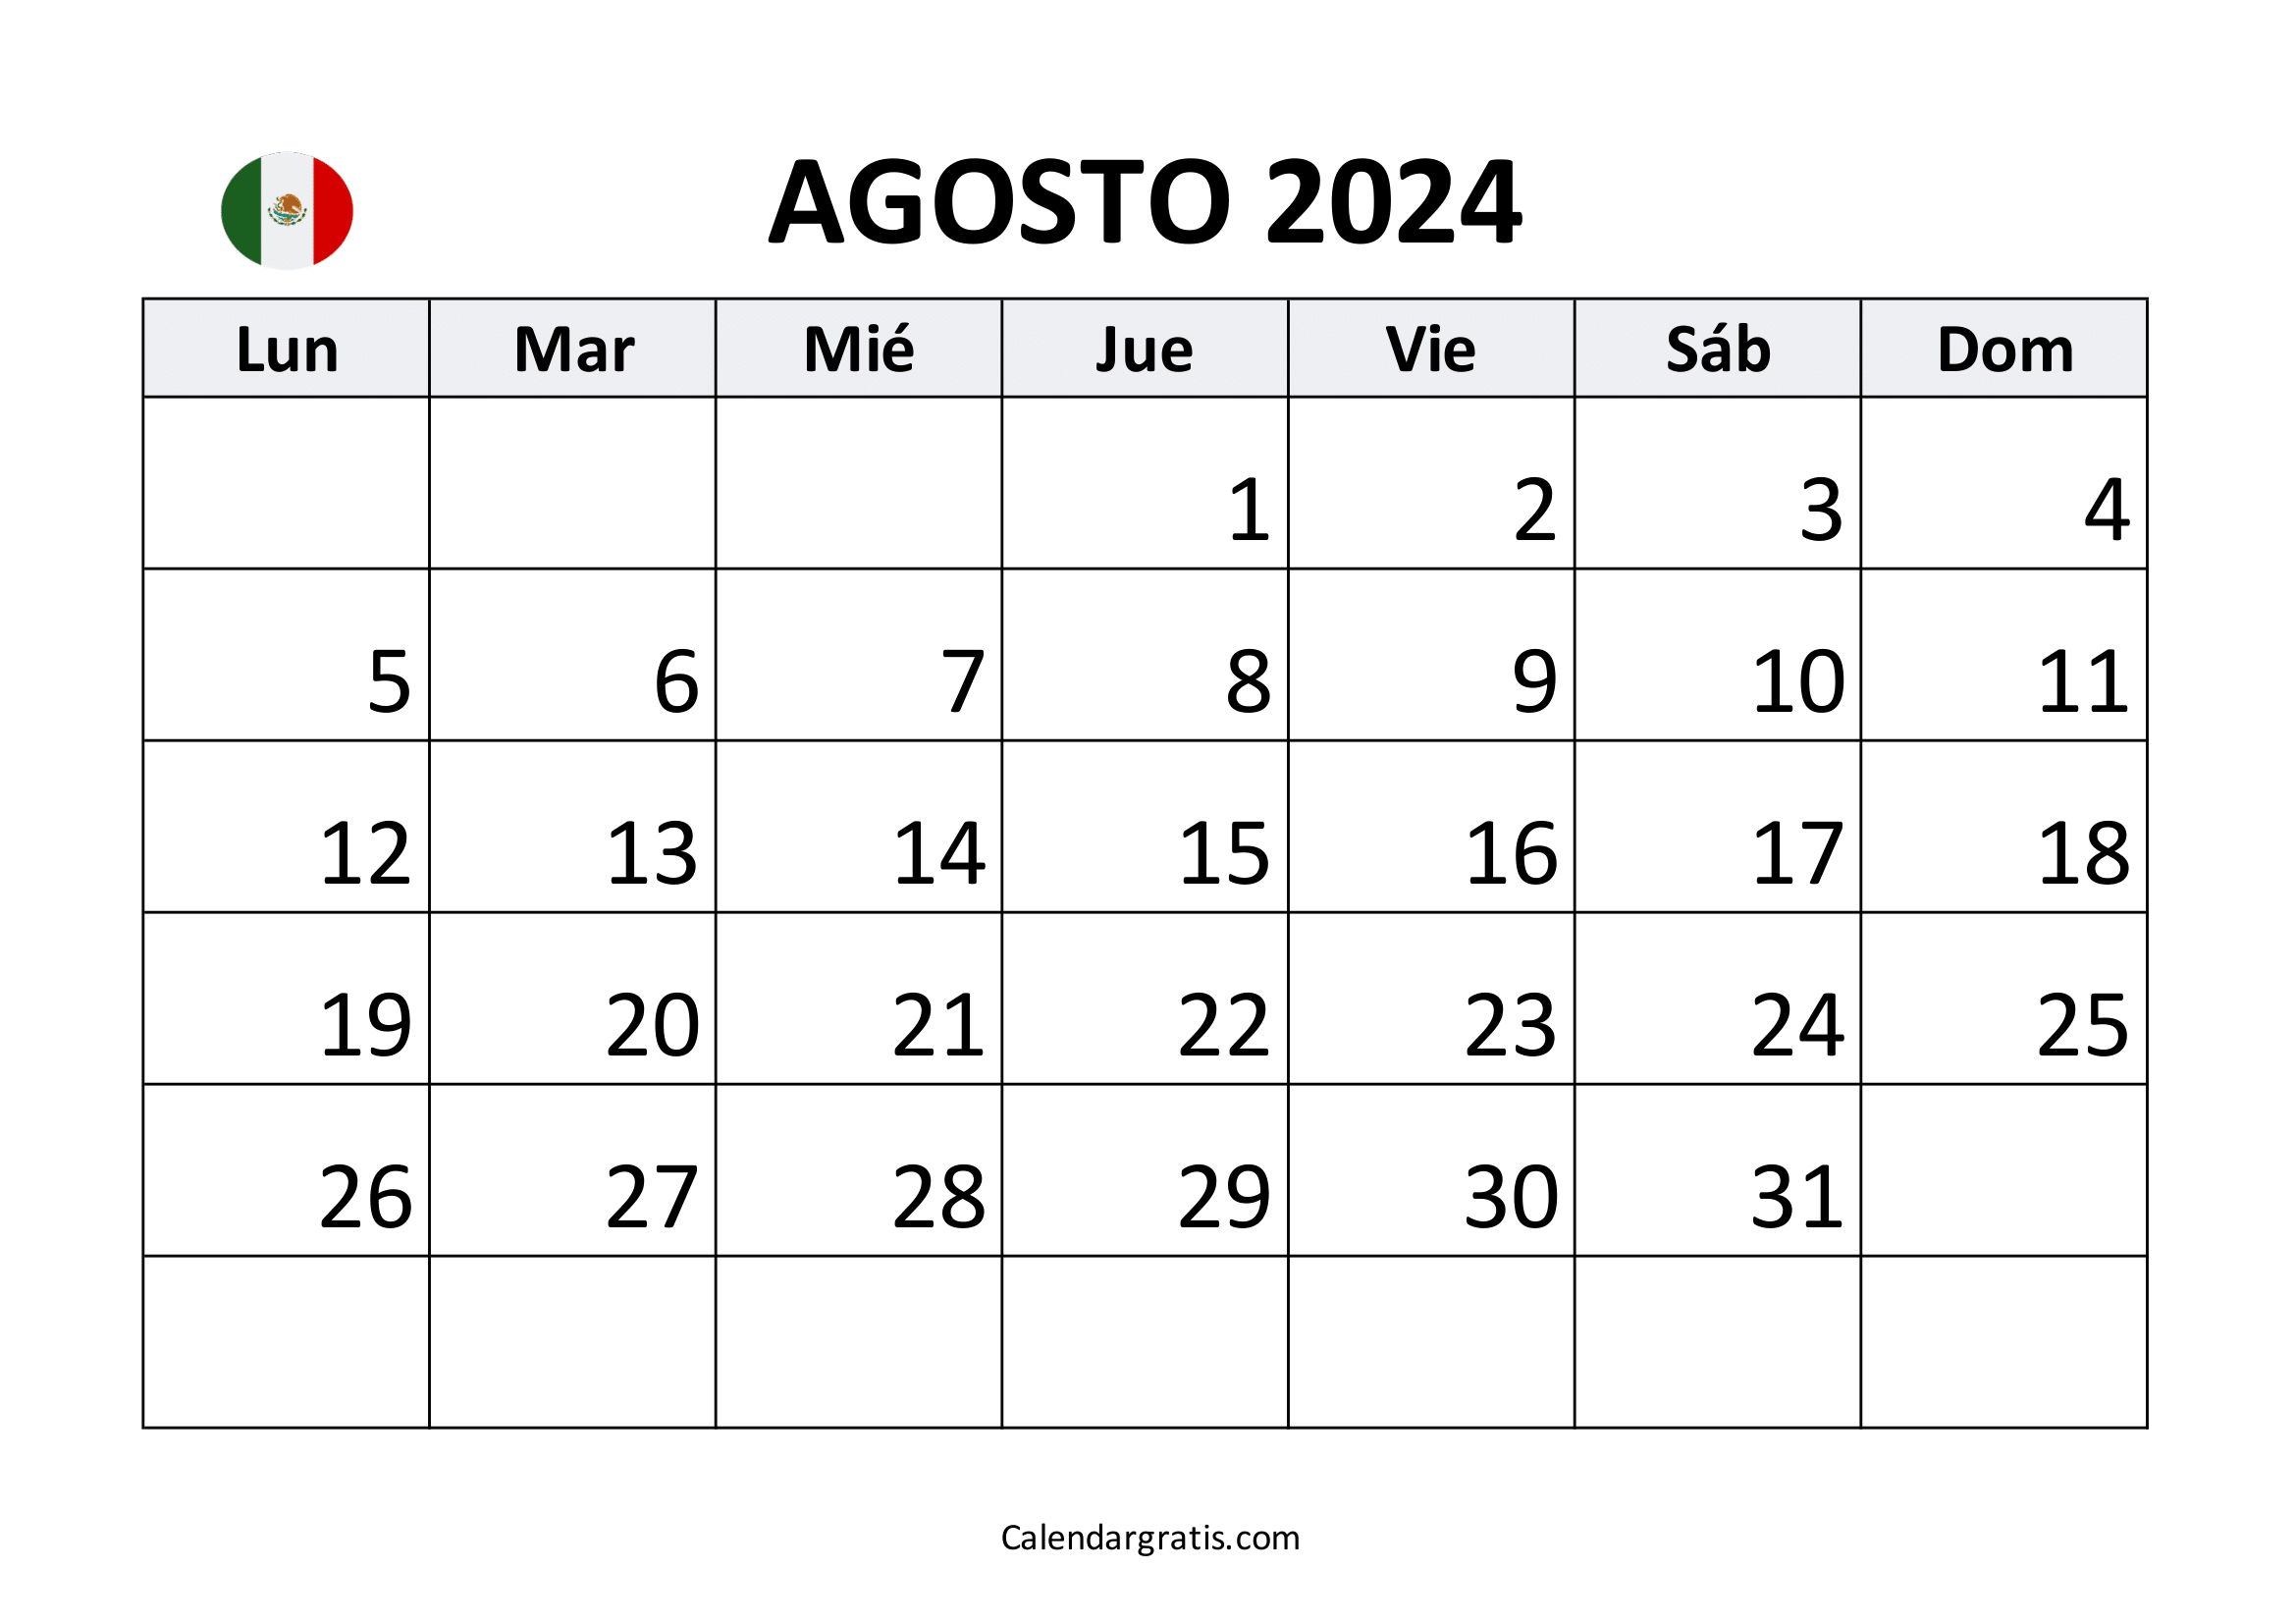 Calendario agosto 2024 para imprimir México